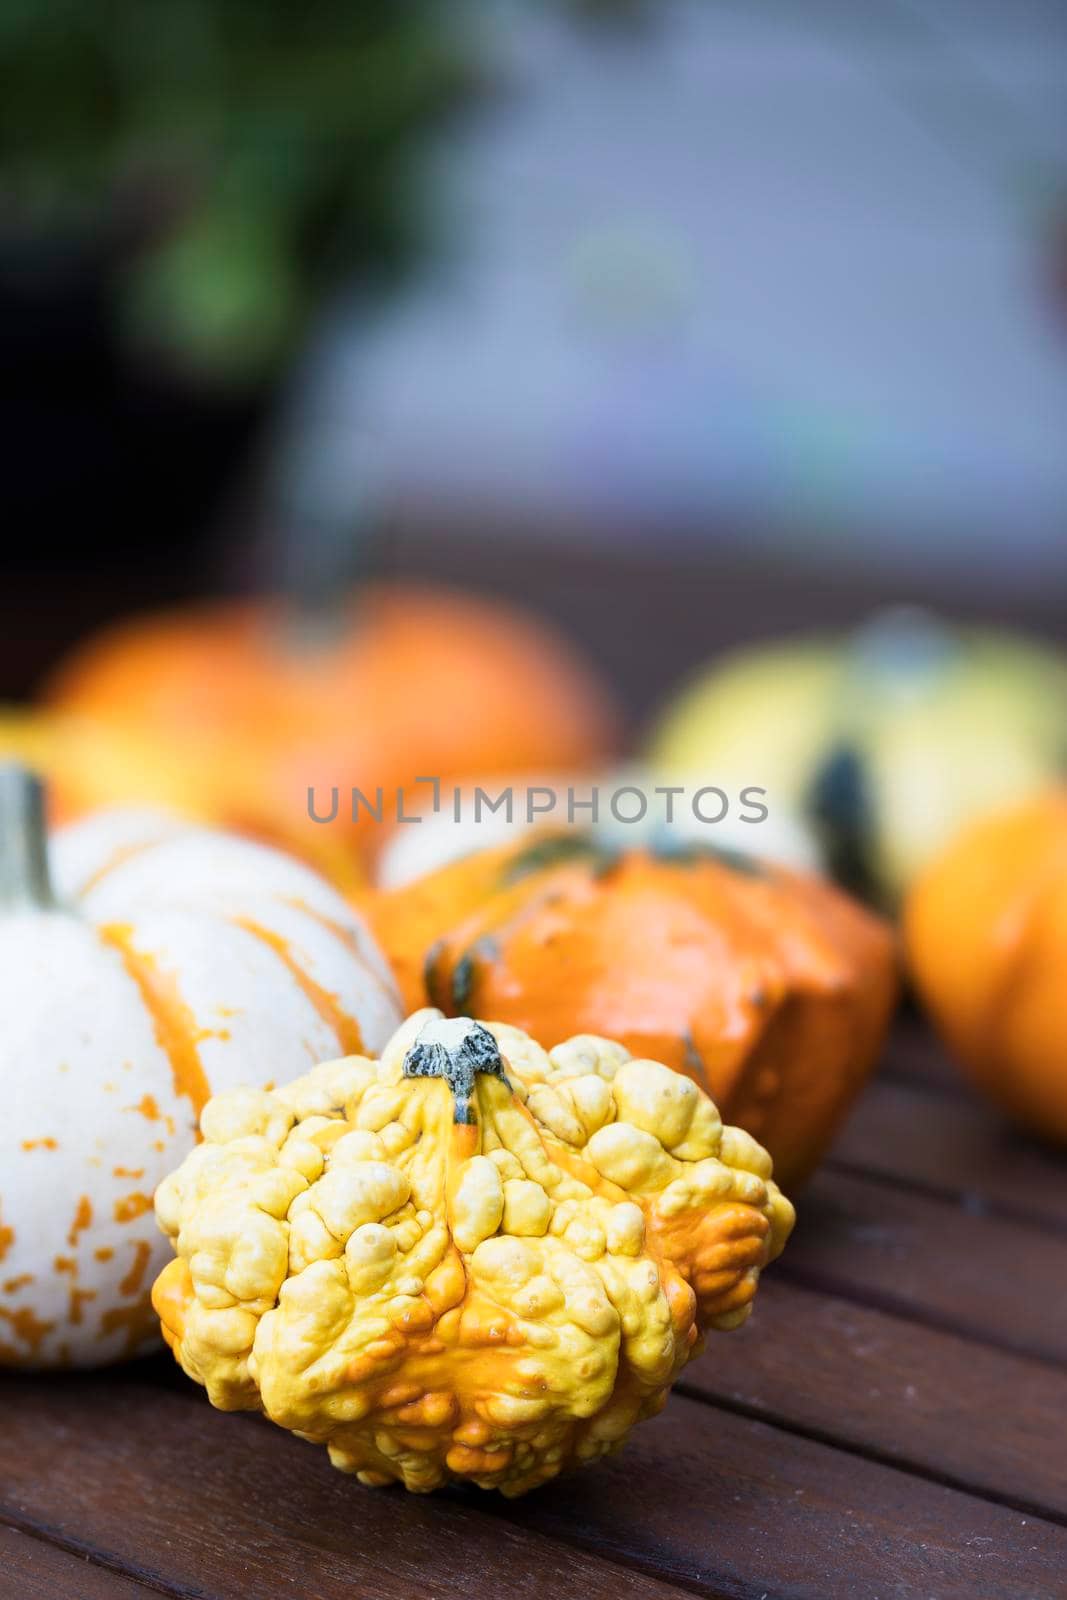 Knobby Autumn Gourd by charlotteLake